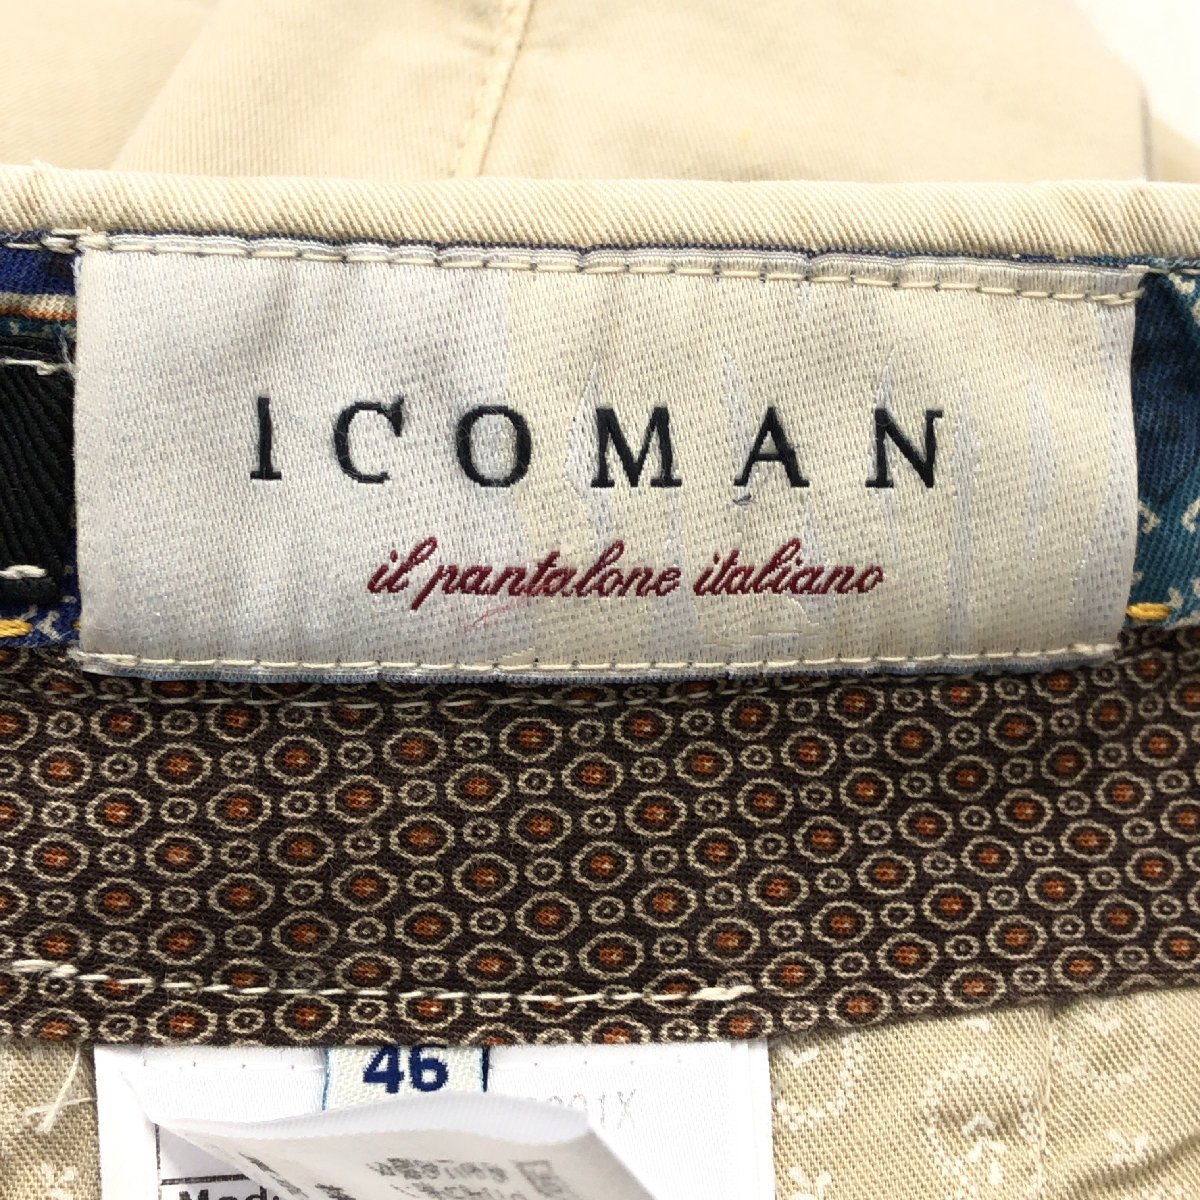 ●伊製 ICOMAN イコマン ストレッチ チノパンツ 46 w80 ベージュ イタリア製 国内正規品 メンズ 紳士_画像3